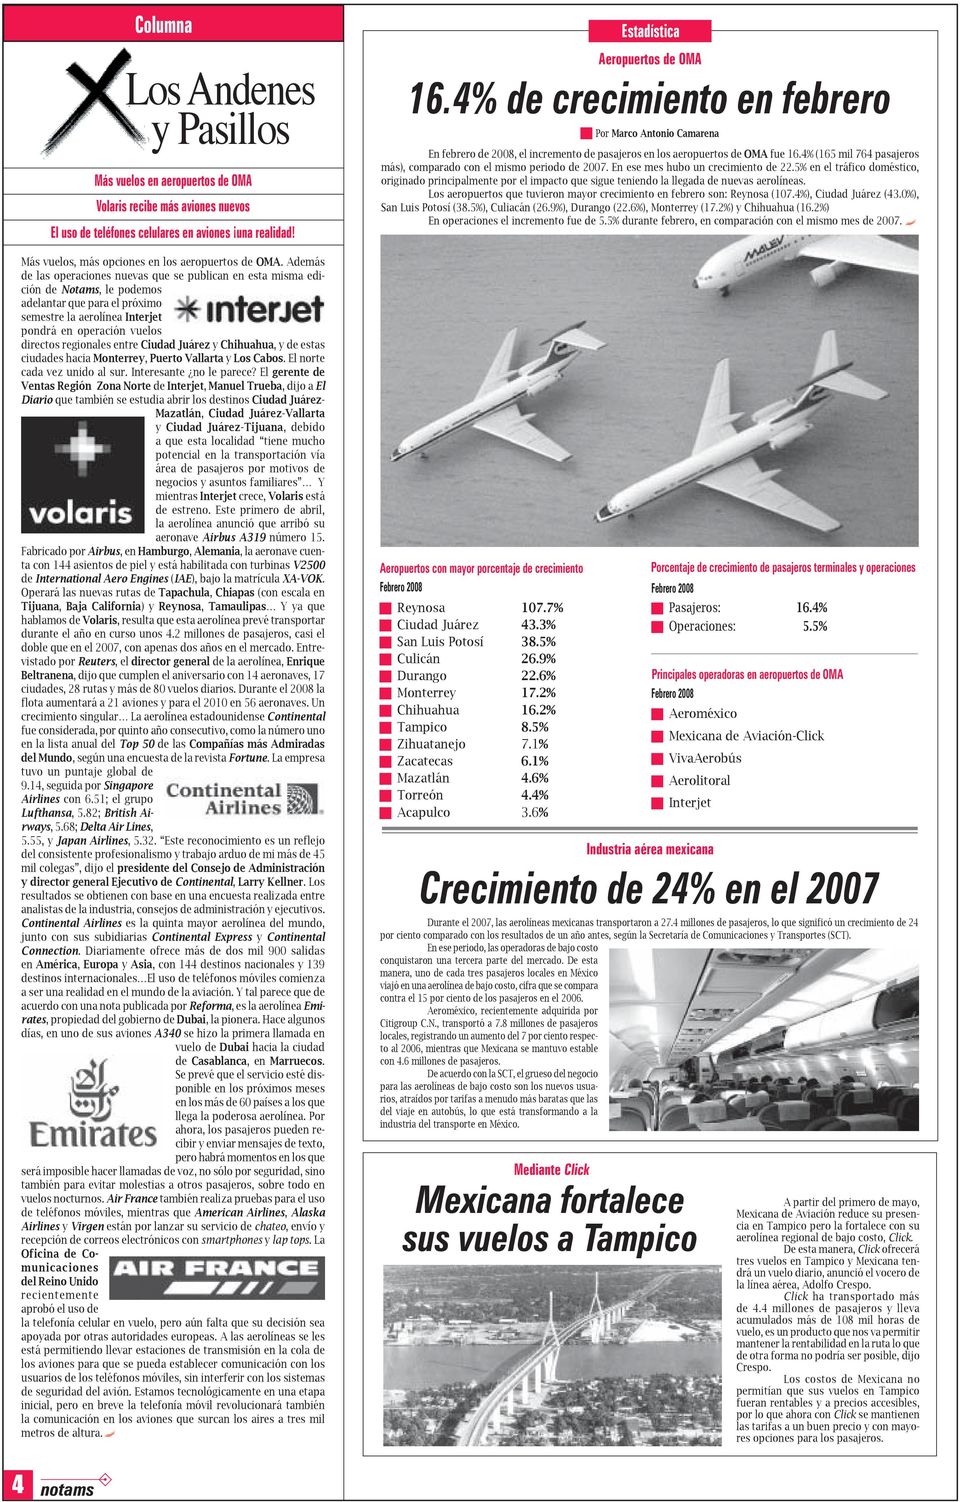 Además de las operaciones nuevas que se publican en esta misma edición de Notams, le podemos adelantar que para el próximo semestre la aerolínea Interjet pondrá en operación vuelos directos